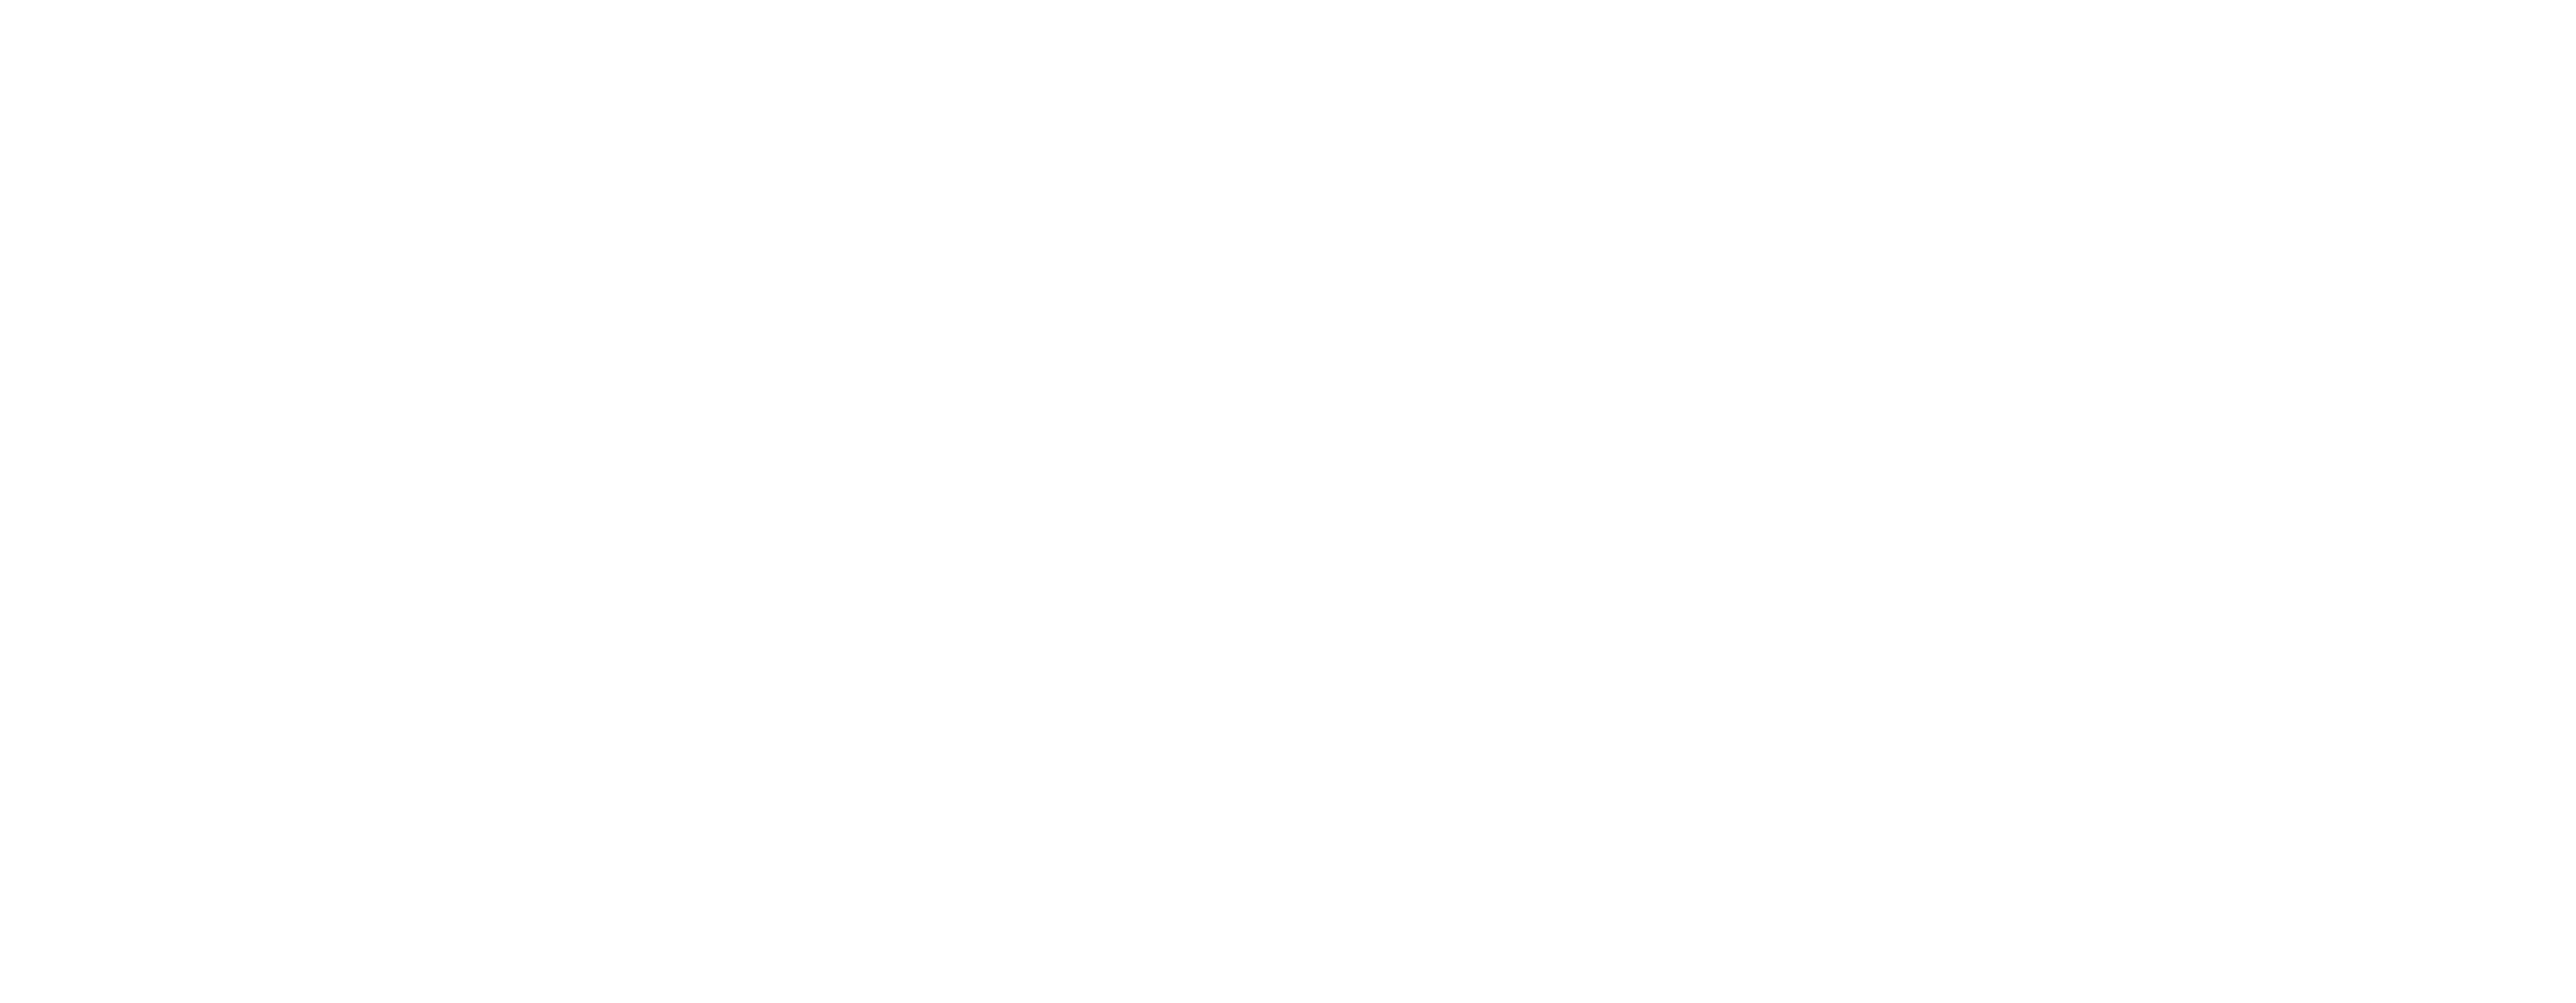 Life_s Legal Moments-Full Logo White